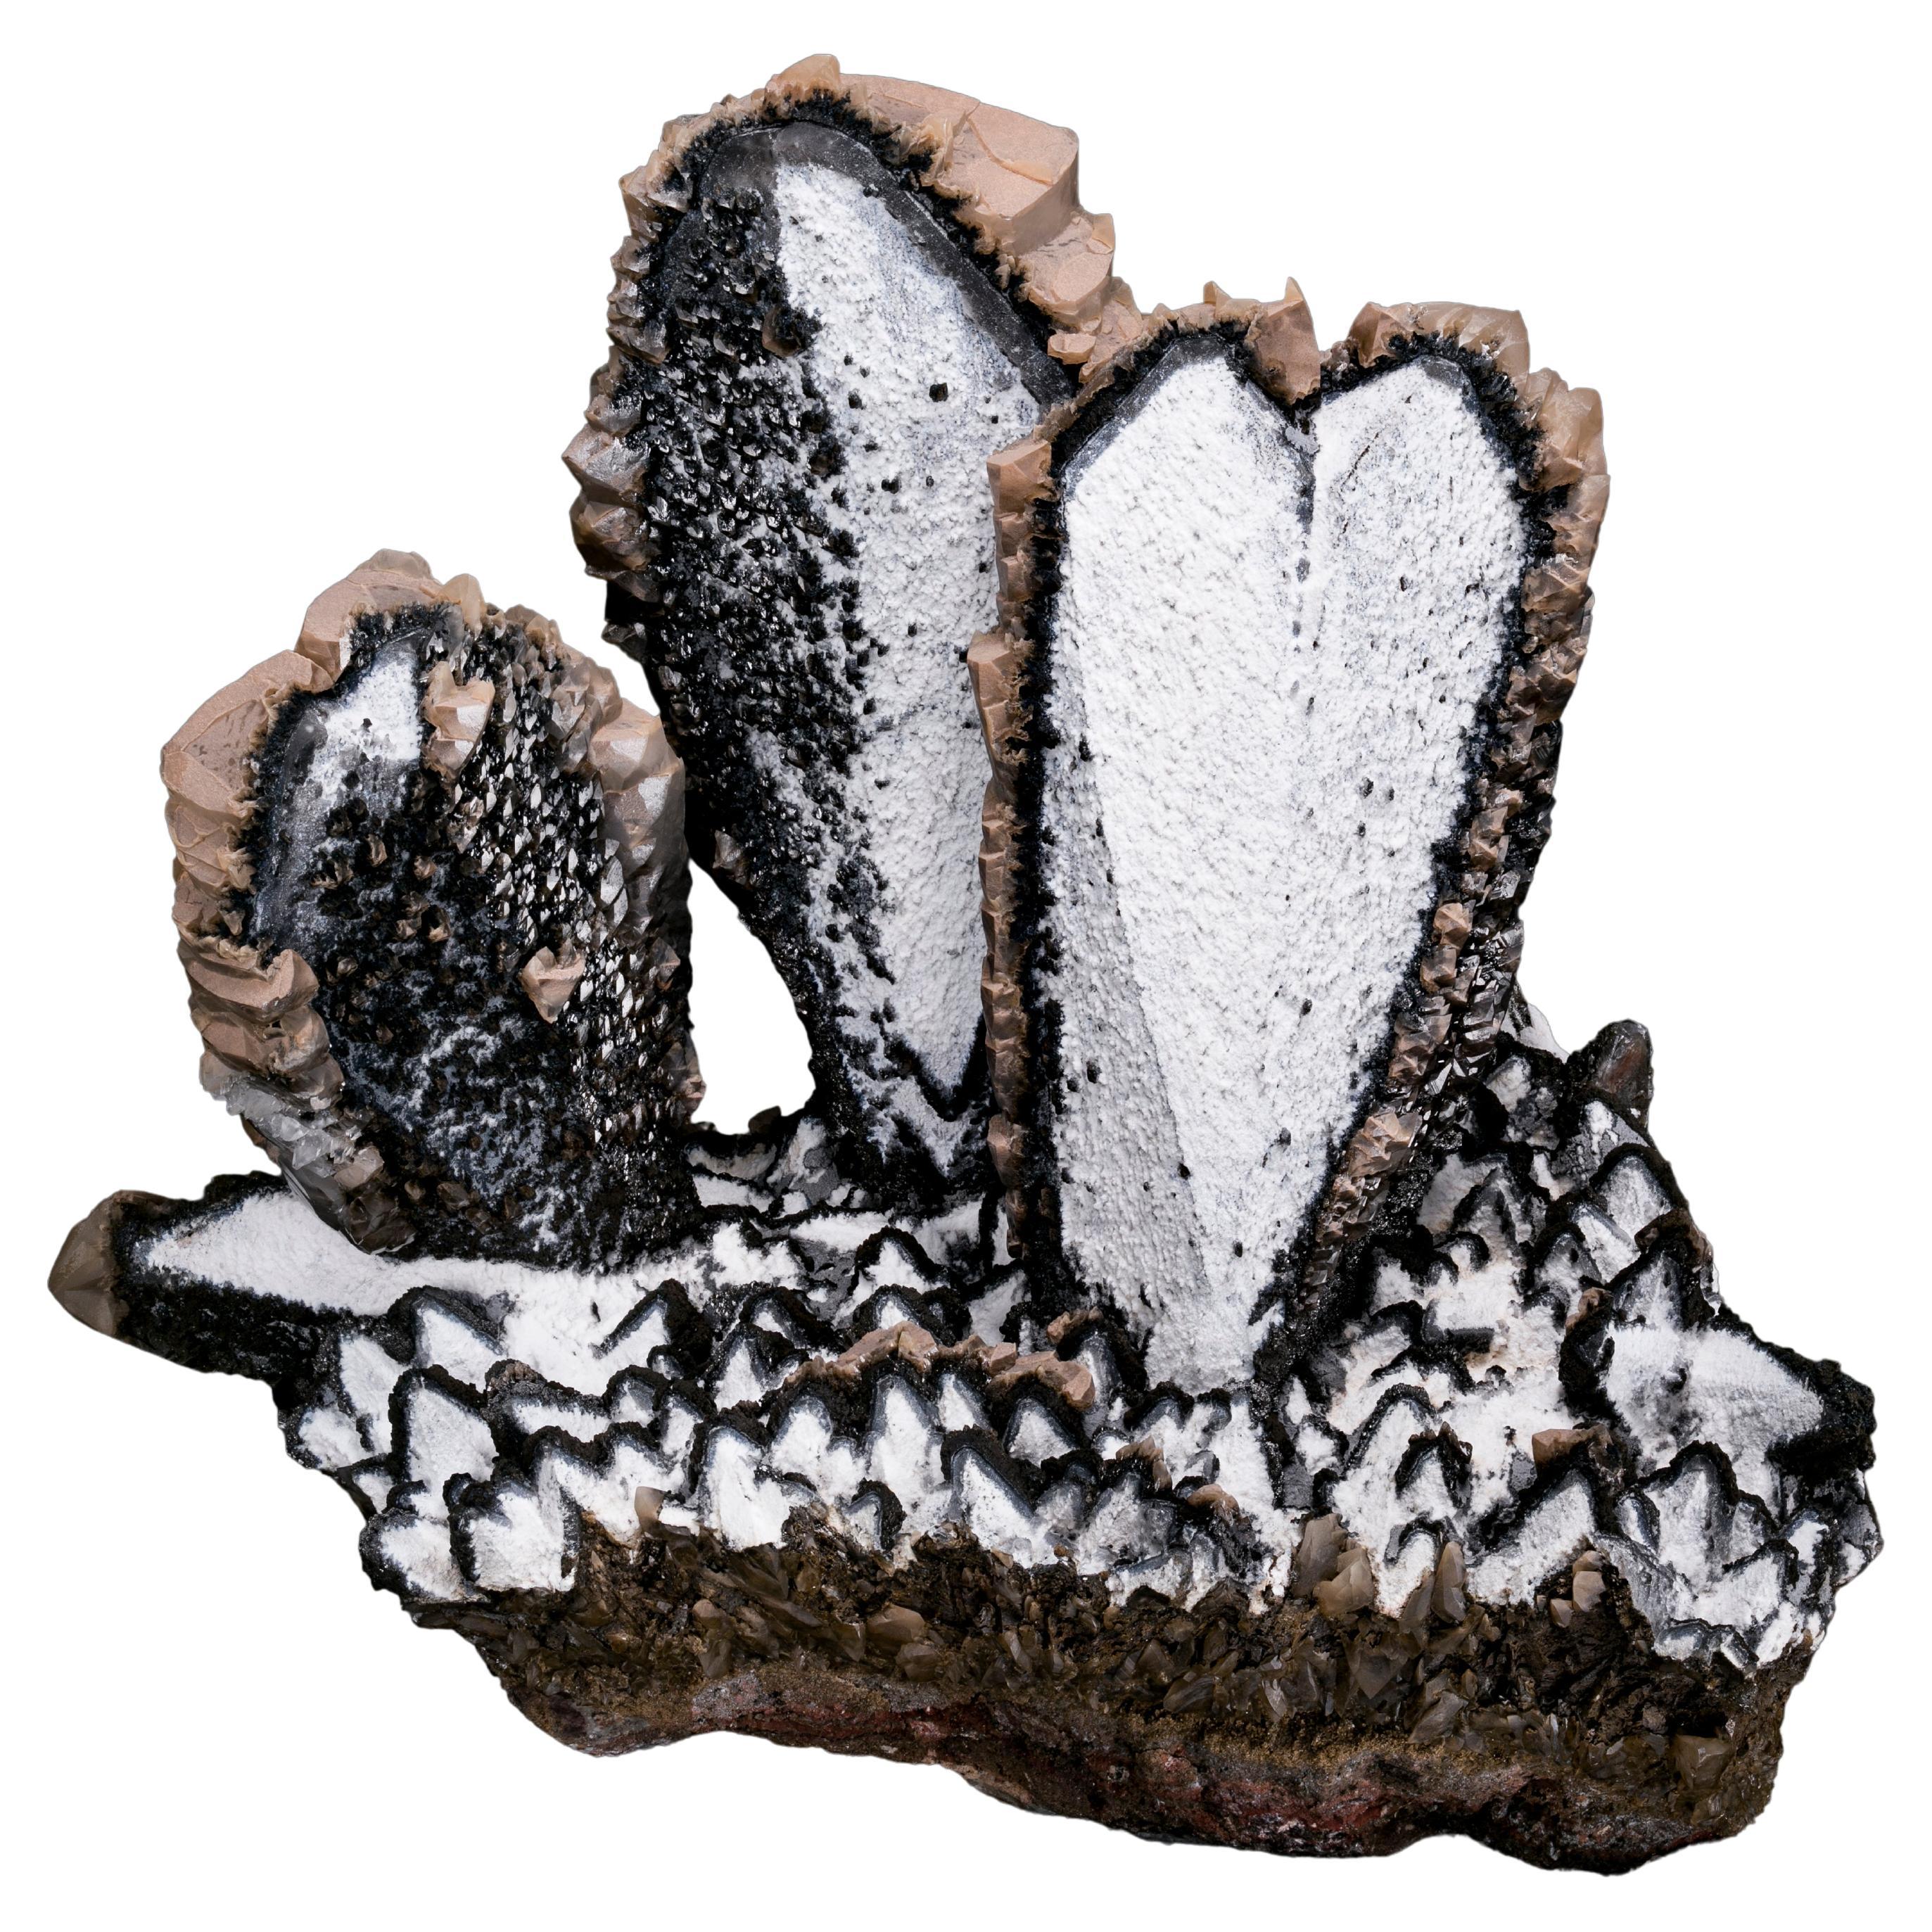 Black and White Calcite Heart Twin Mineral Specimen, Palmarejo, Mexico